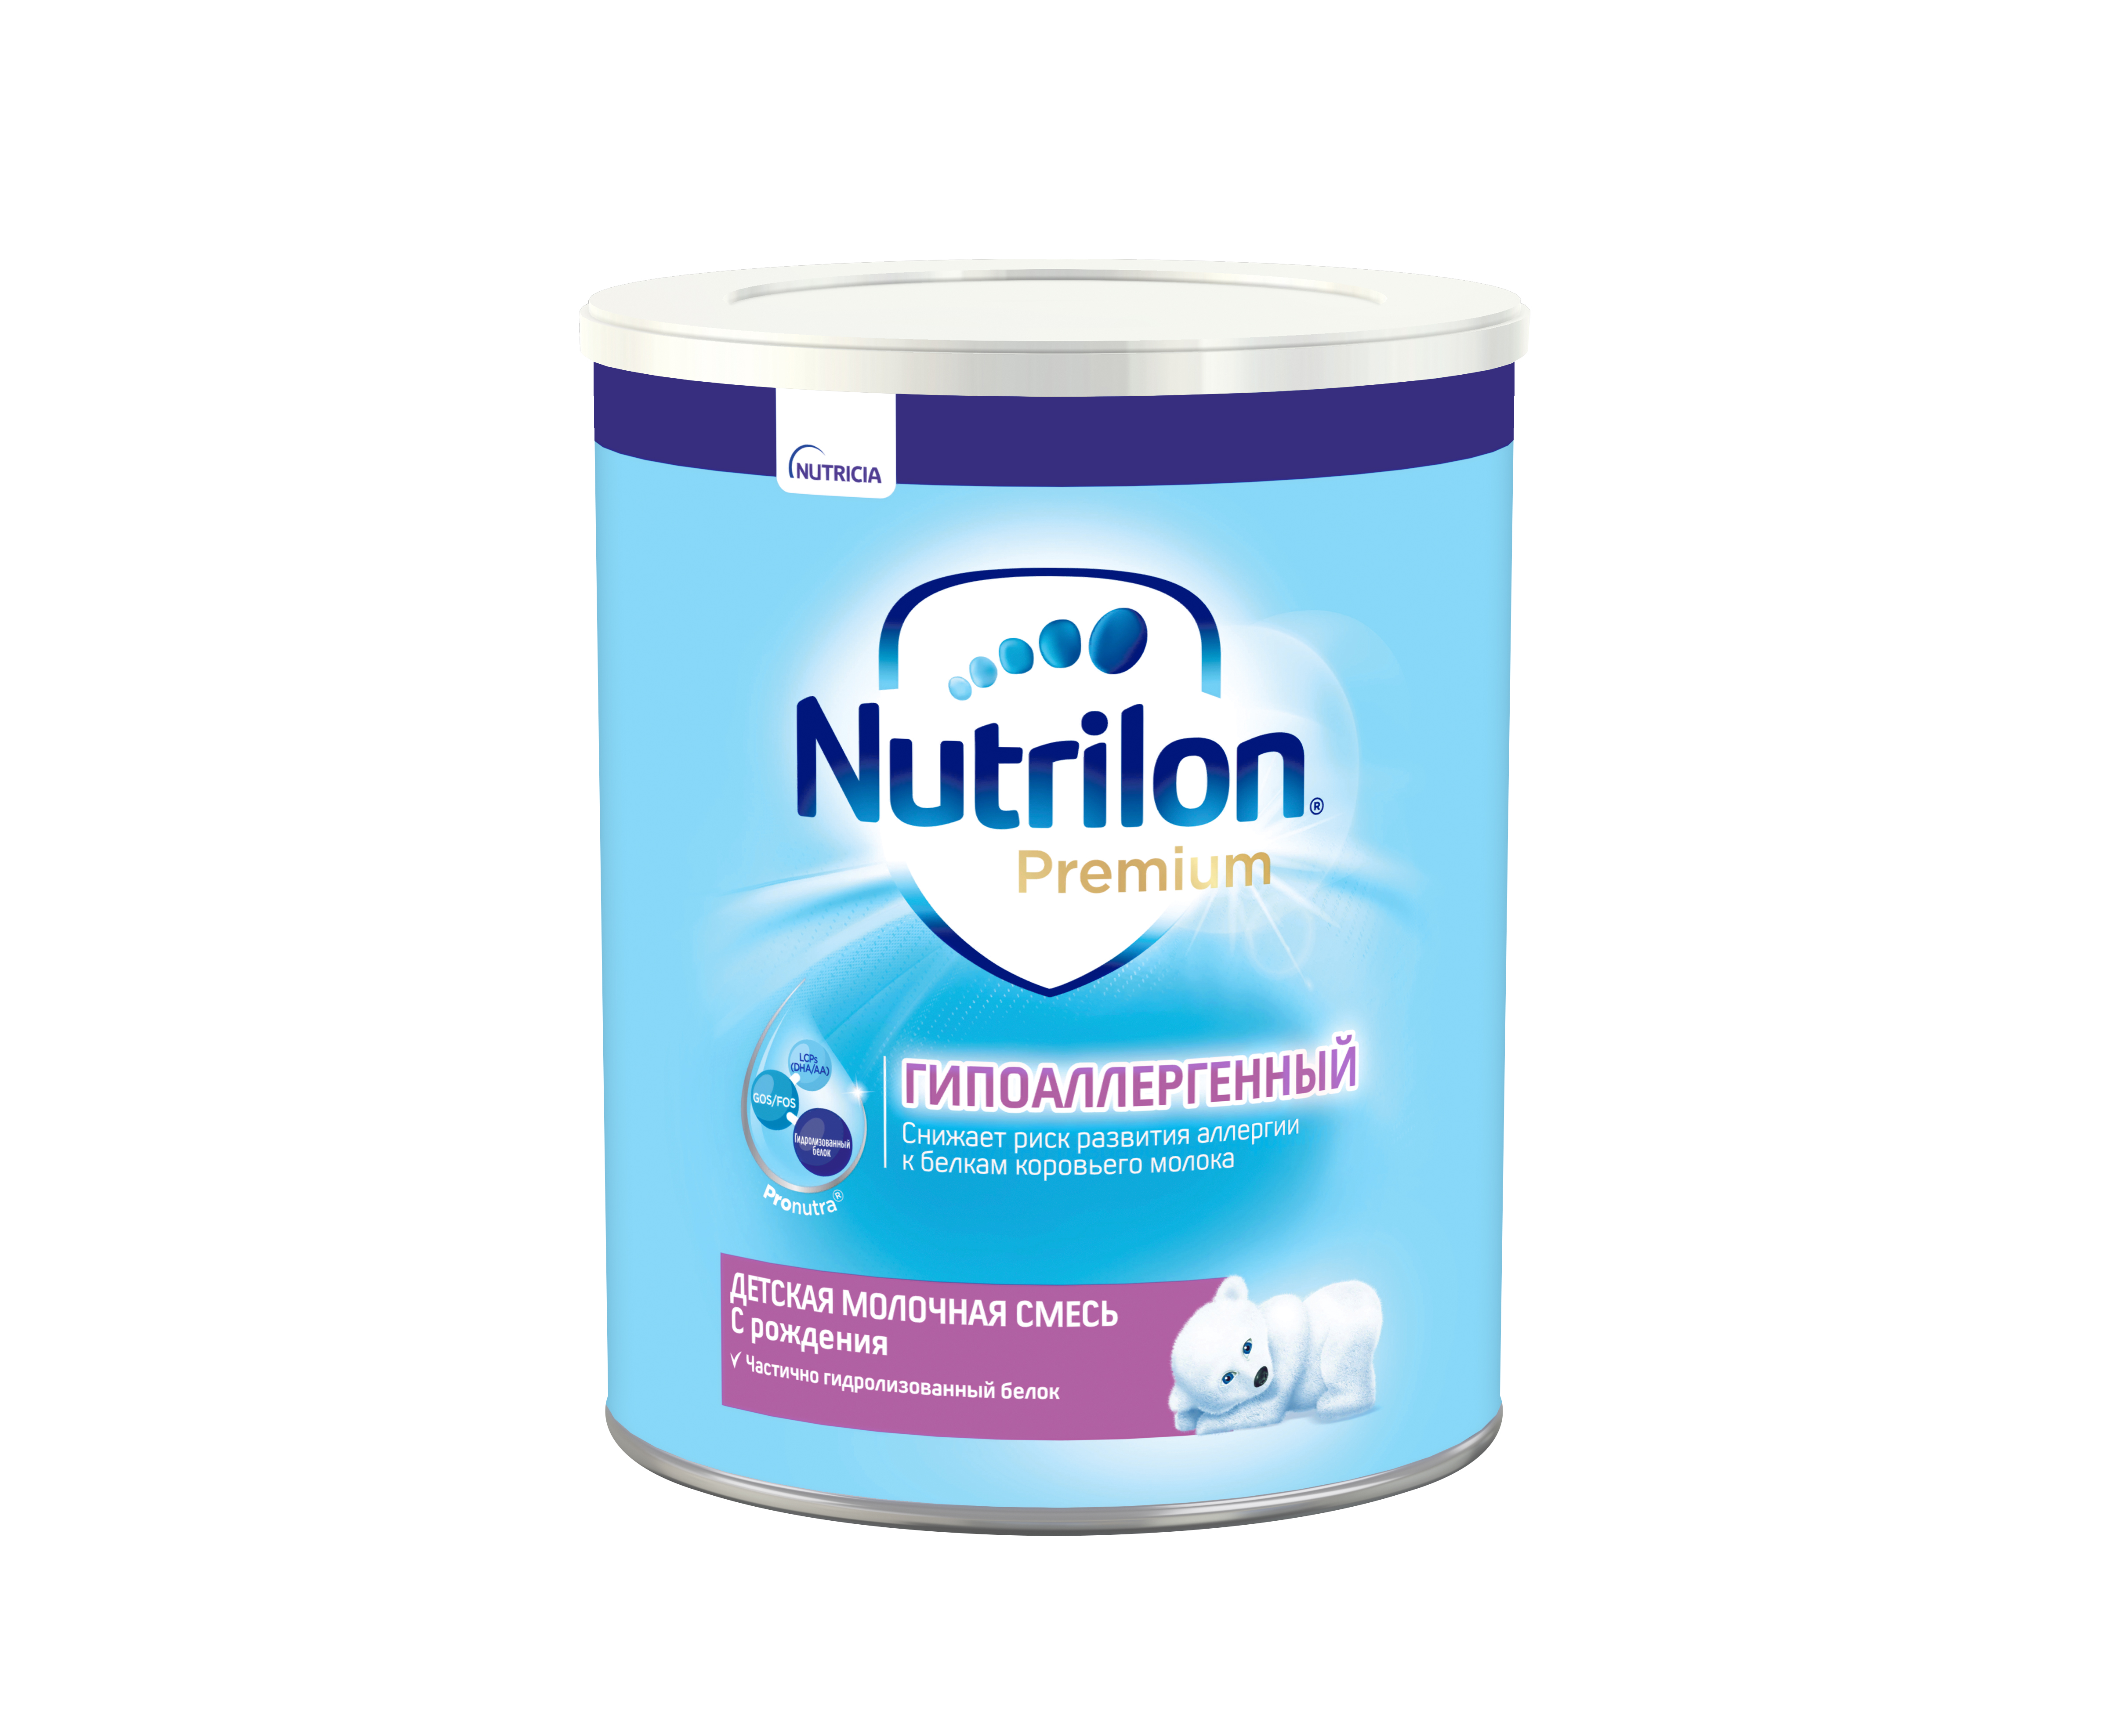 ნუტრილონი პრემიუმი ჰიპოალერგიული / Nutrilon Premium HA